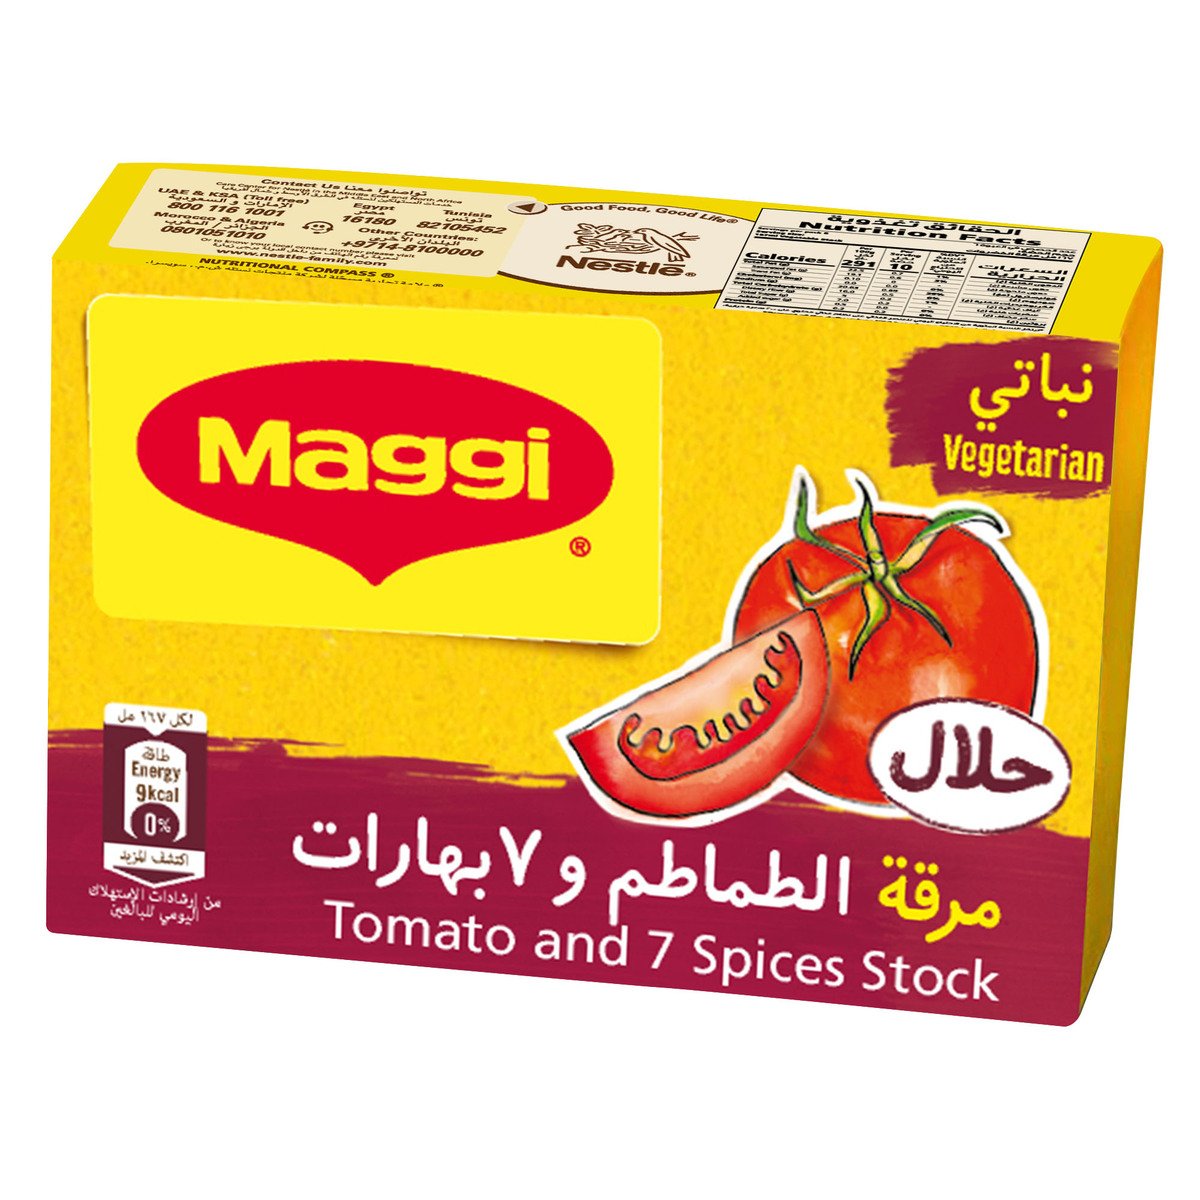 Maggi Tomato and 7 Spice Stock 24 x 10 g